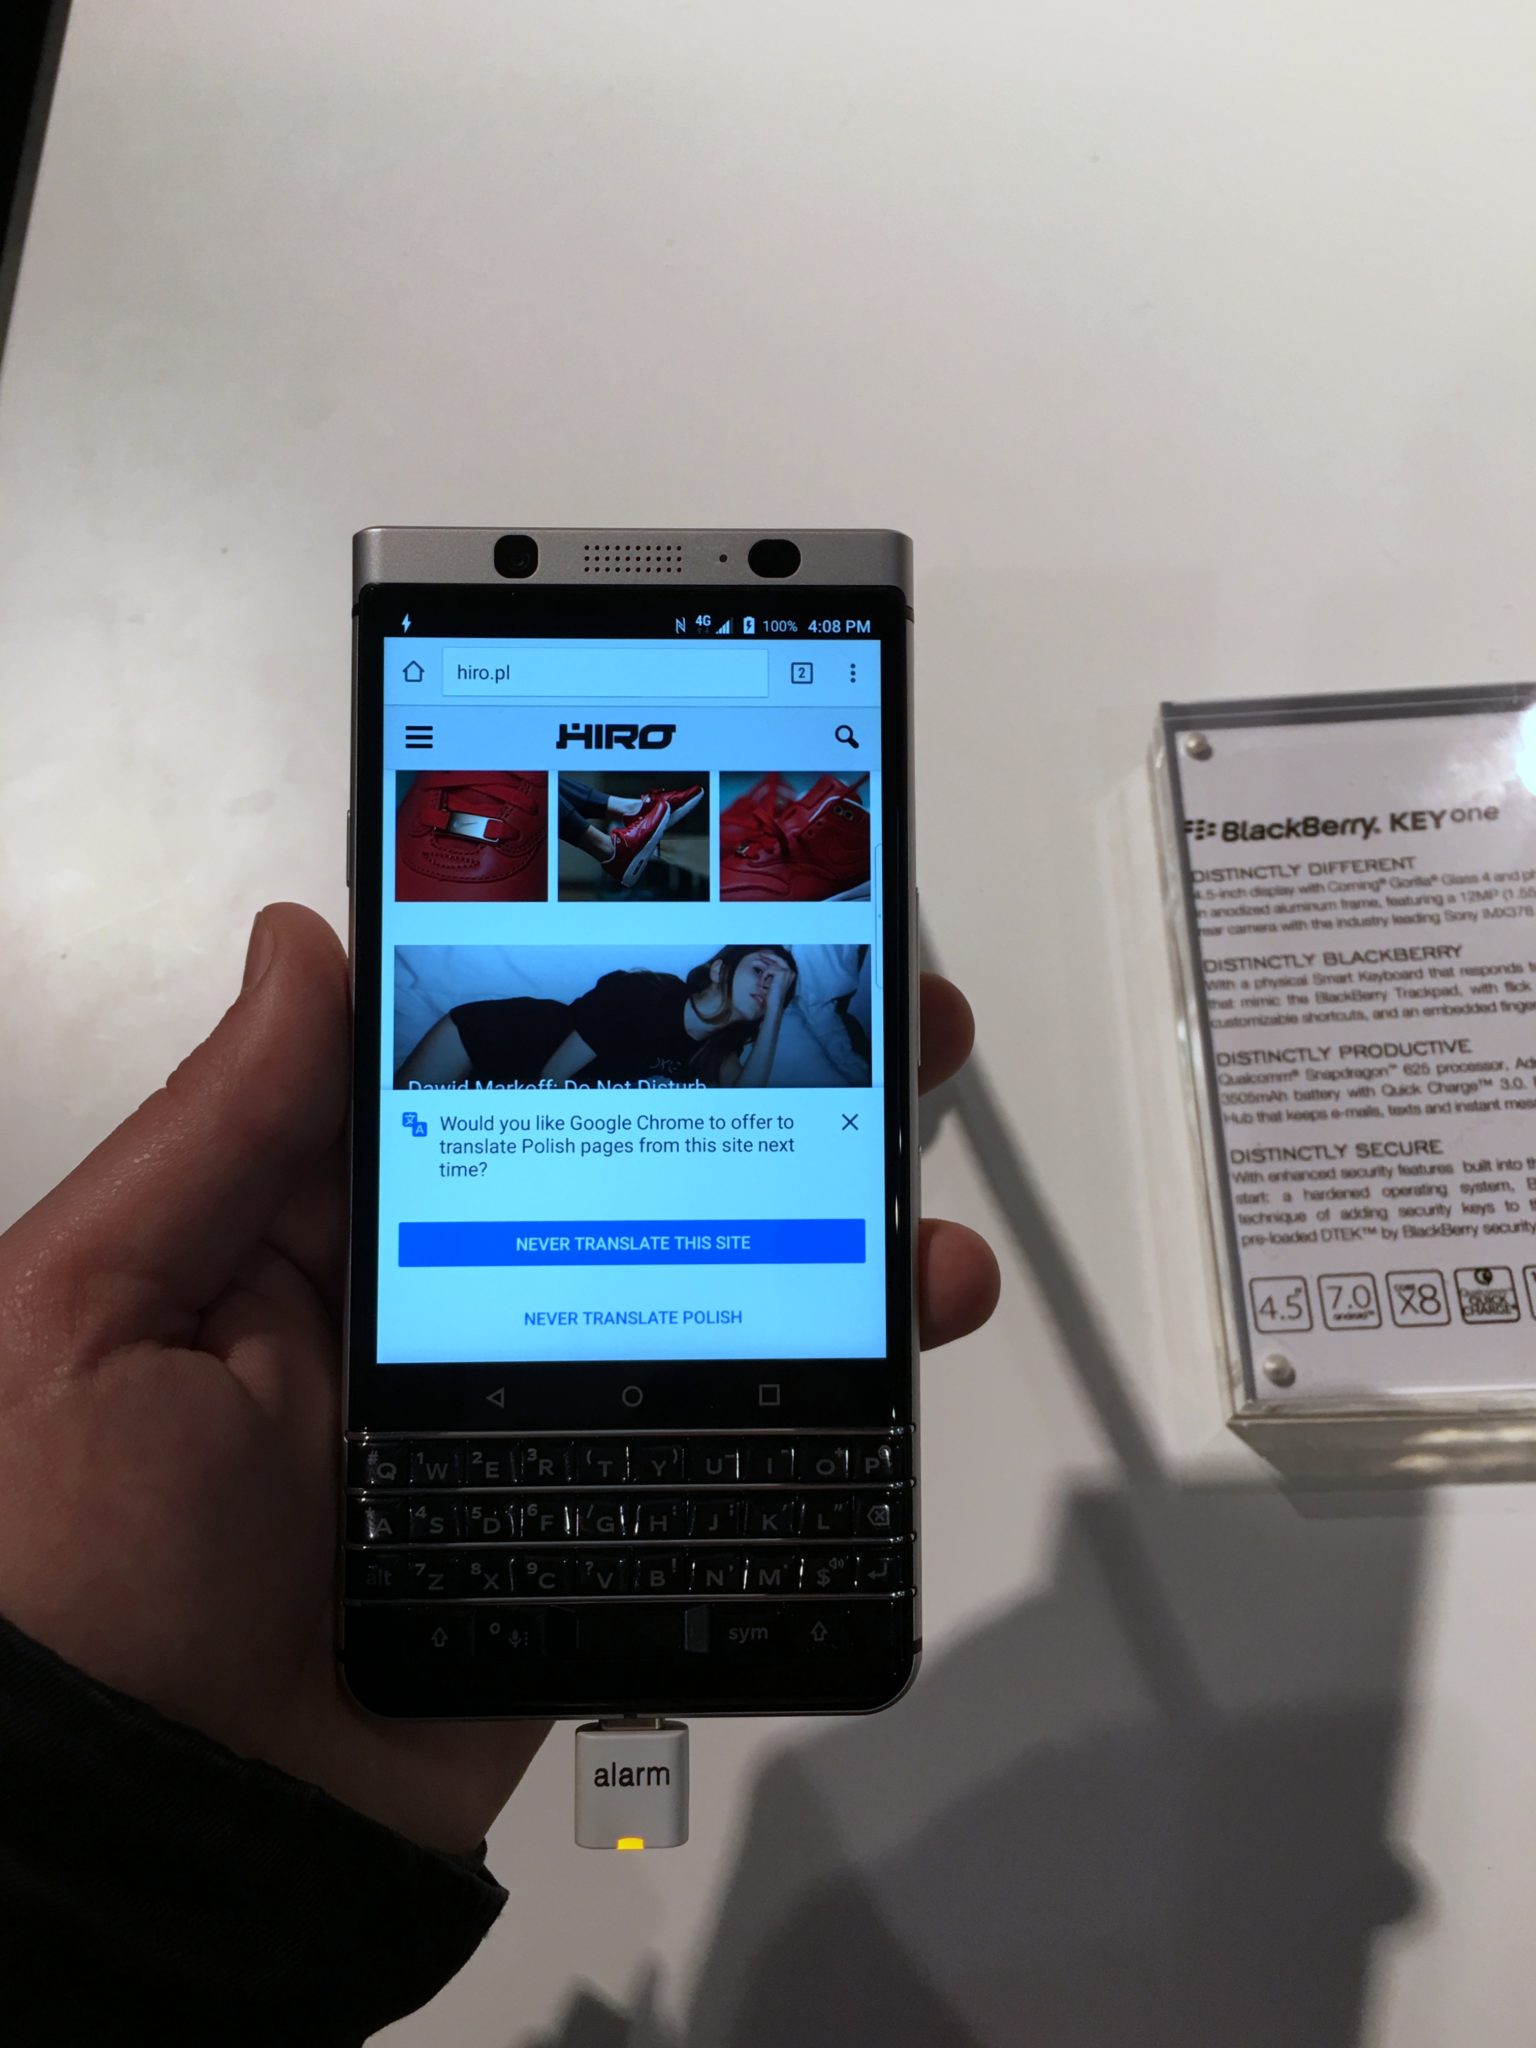 Telefon komórkowy Blackberry z otwartą stroną HIRO